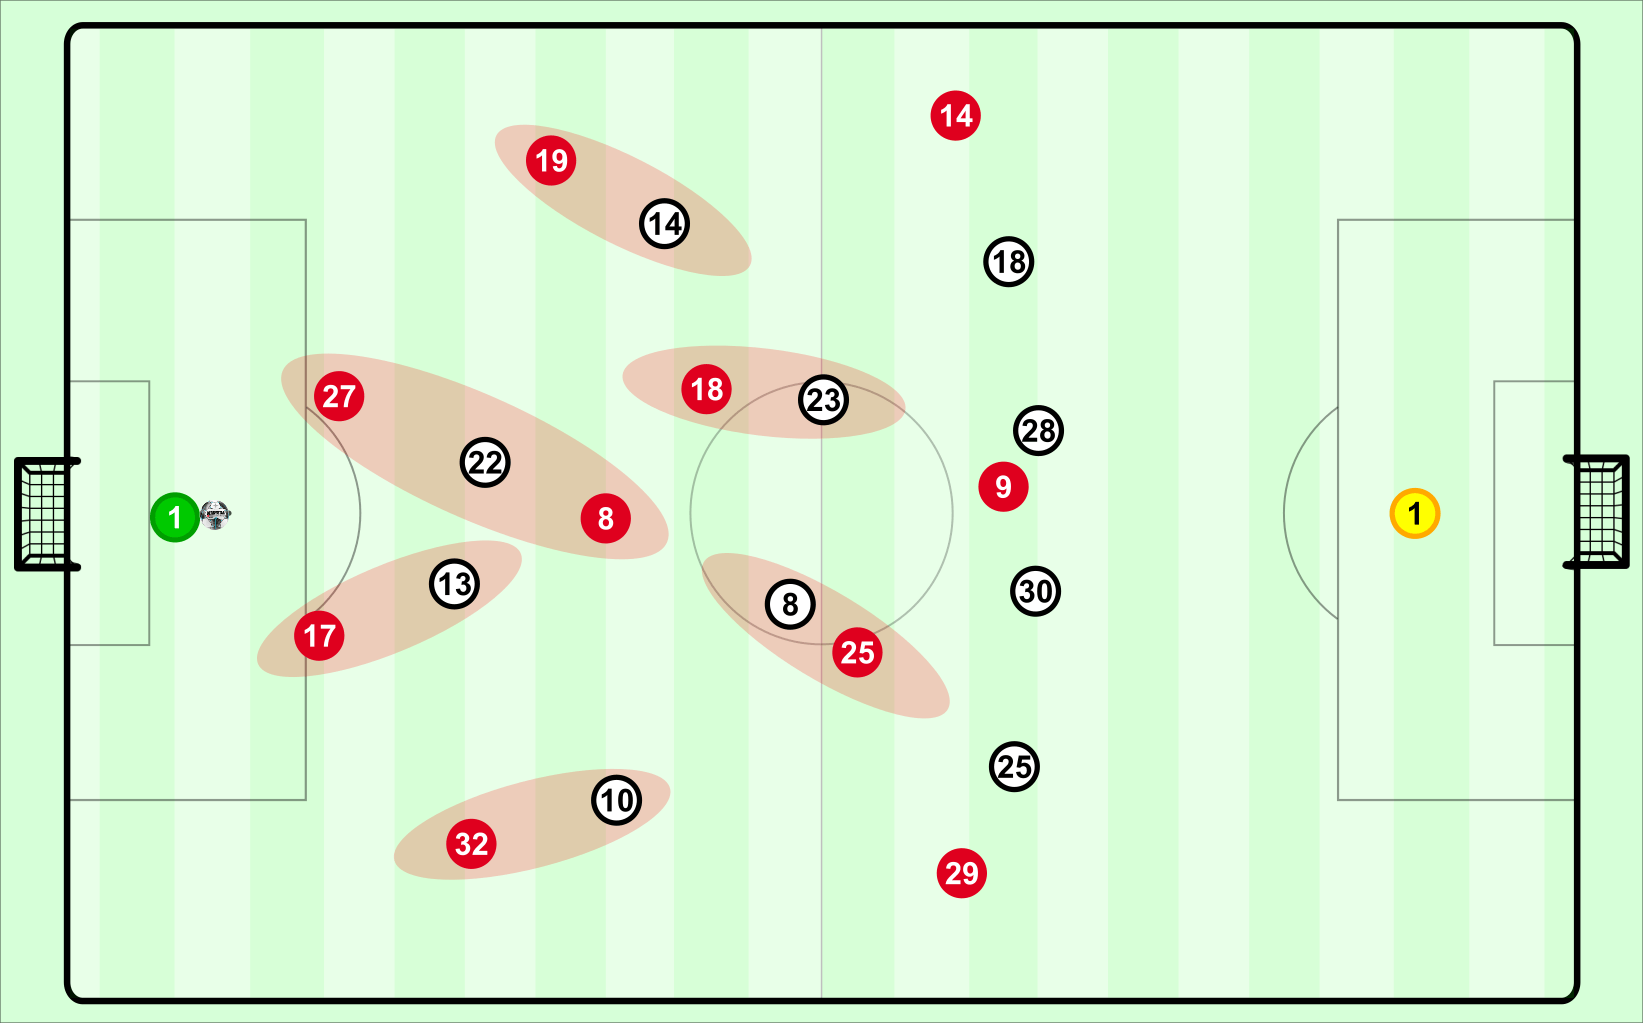 Grafik: So formierten sich beide Teams beim Spielaufbau der Bayern (rote Trikots) nach der taktischen Änderung von Gladbach. Die roten Markierungen zeigen die Zuordnungen in der Gladbacher Deckung.